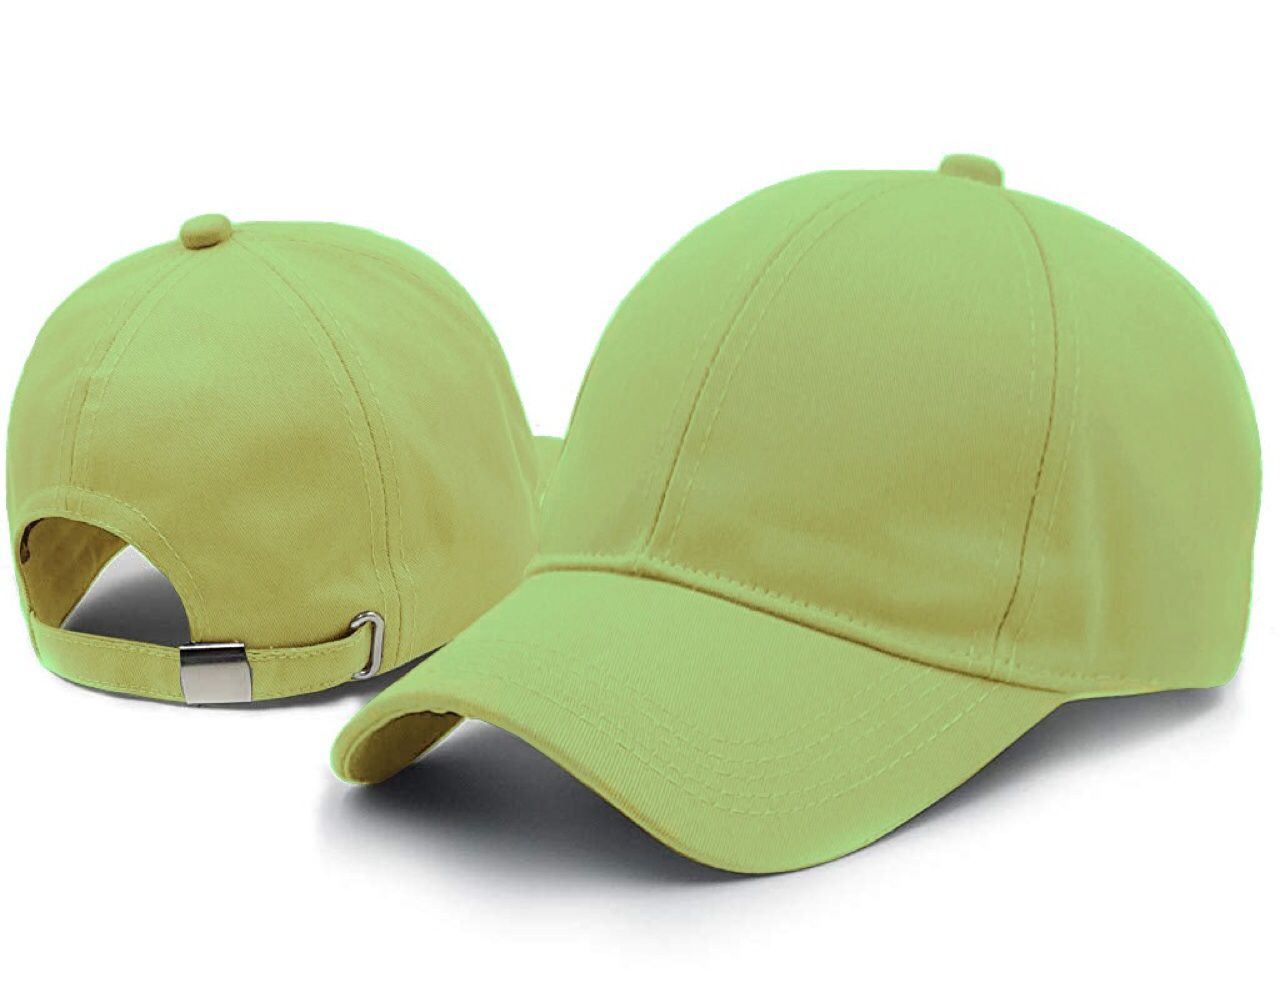 Regular Trendy Unisex Baseball Cap(Green)